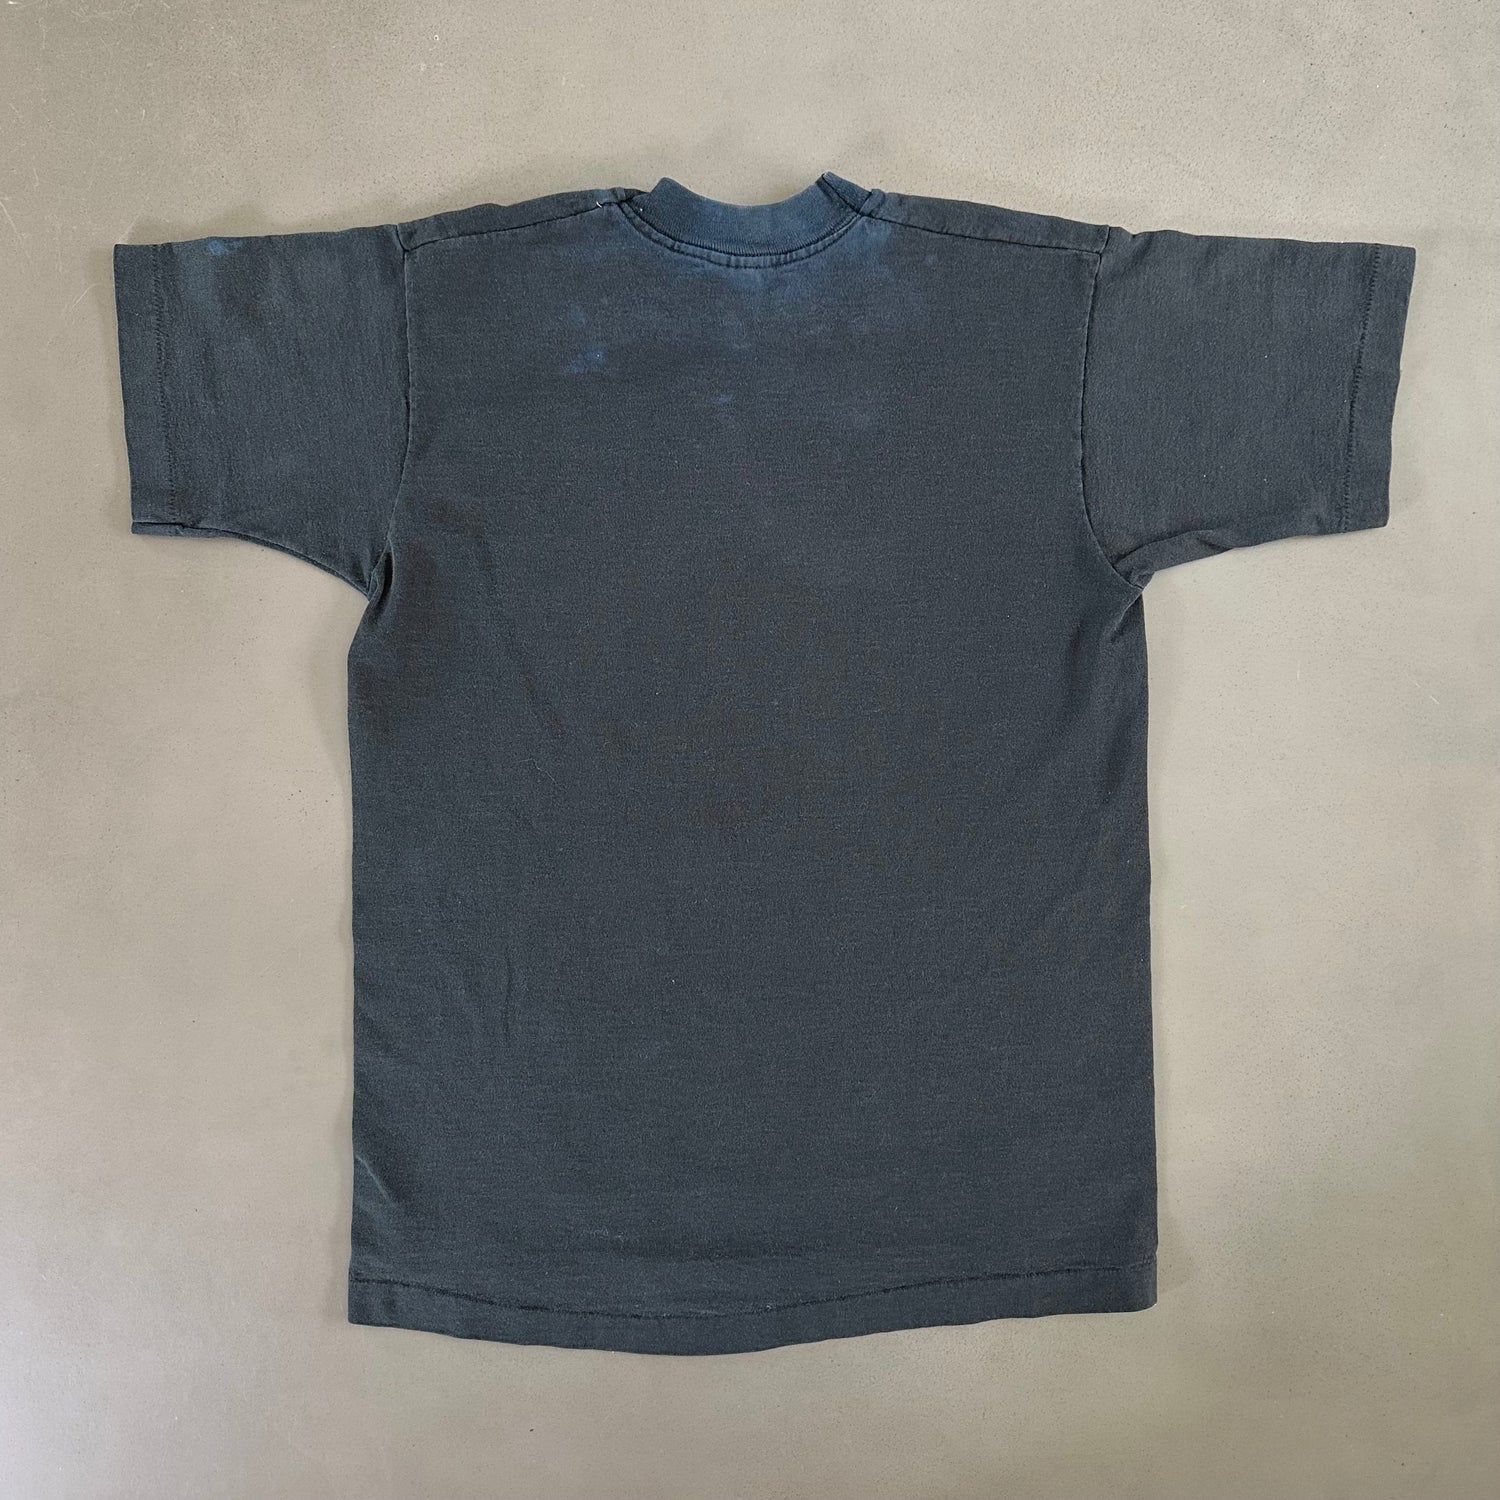 Vintage 1995 Key West T-shirt size Medium